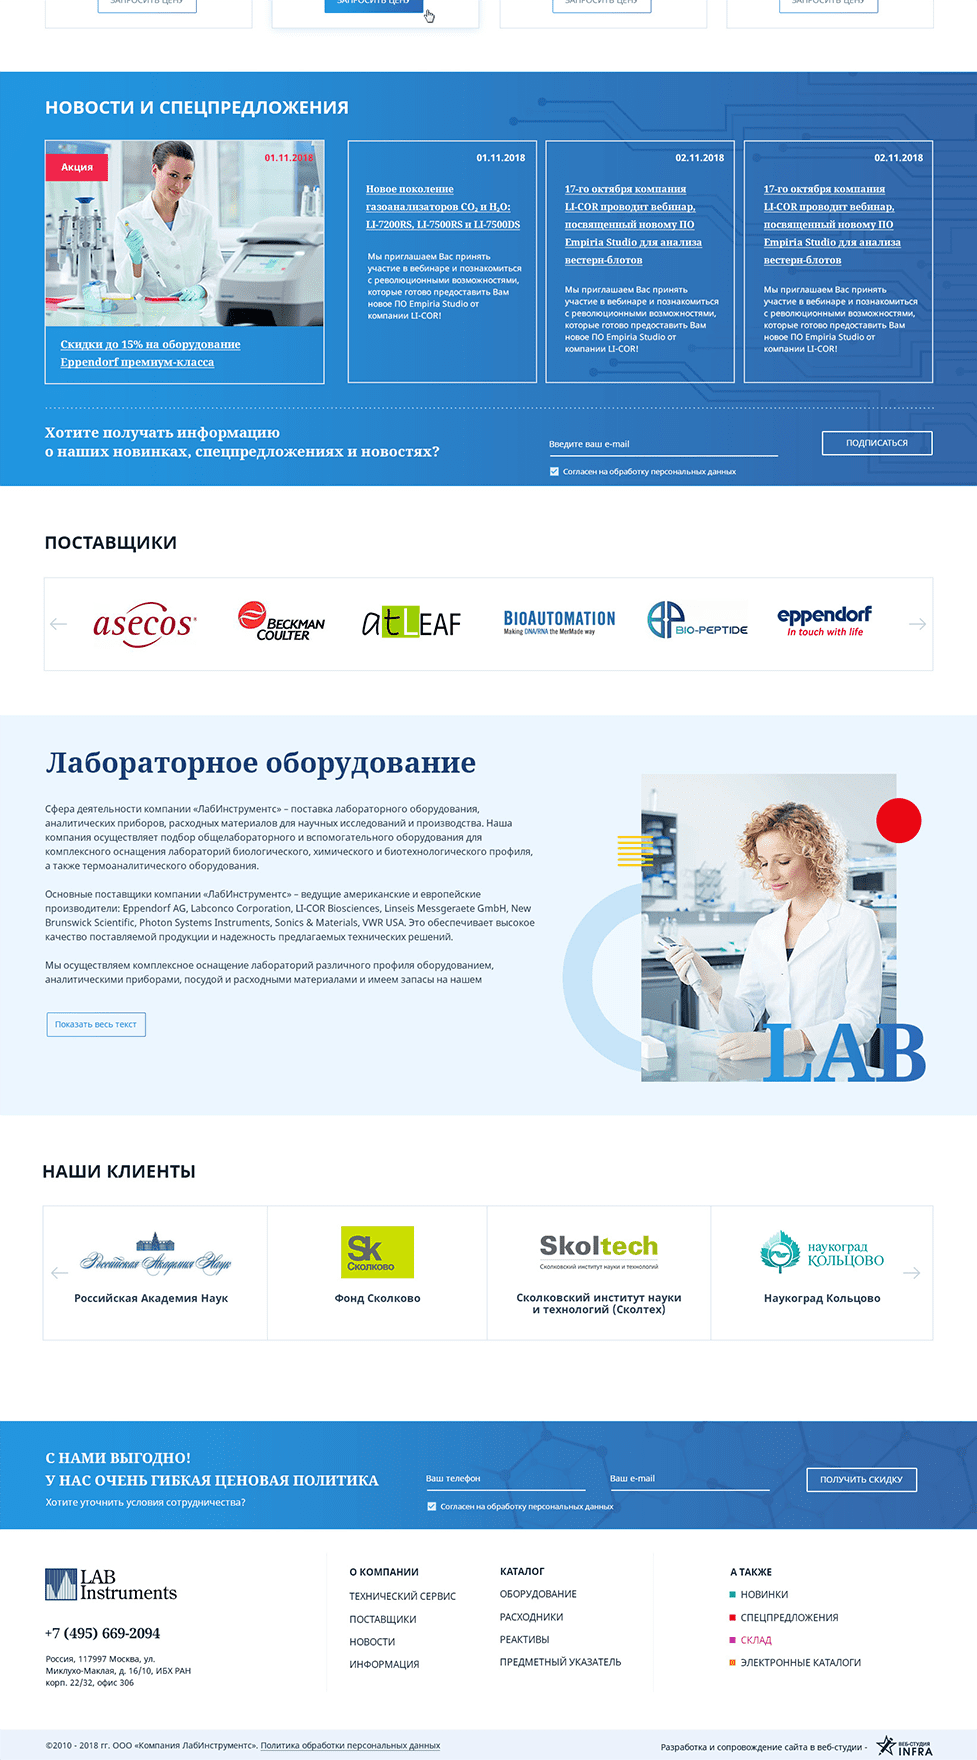 Второй и последующие экраны главной страницы сайта https://labinstruments.ru